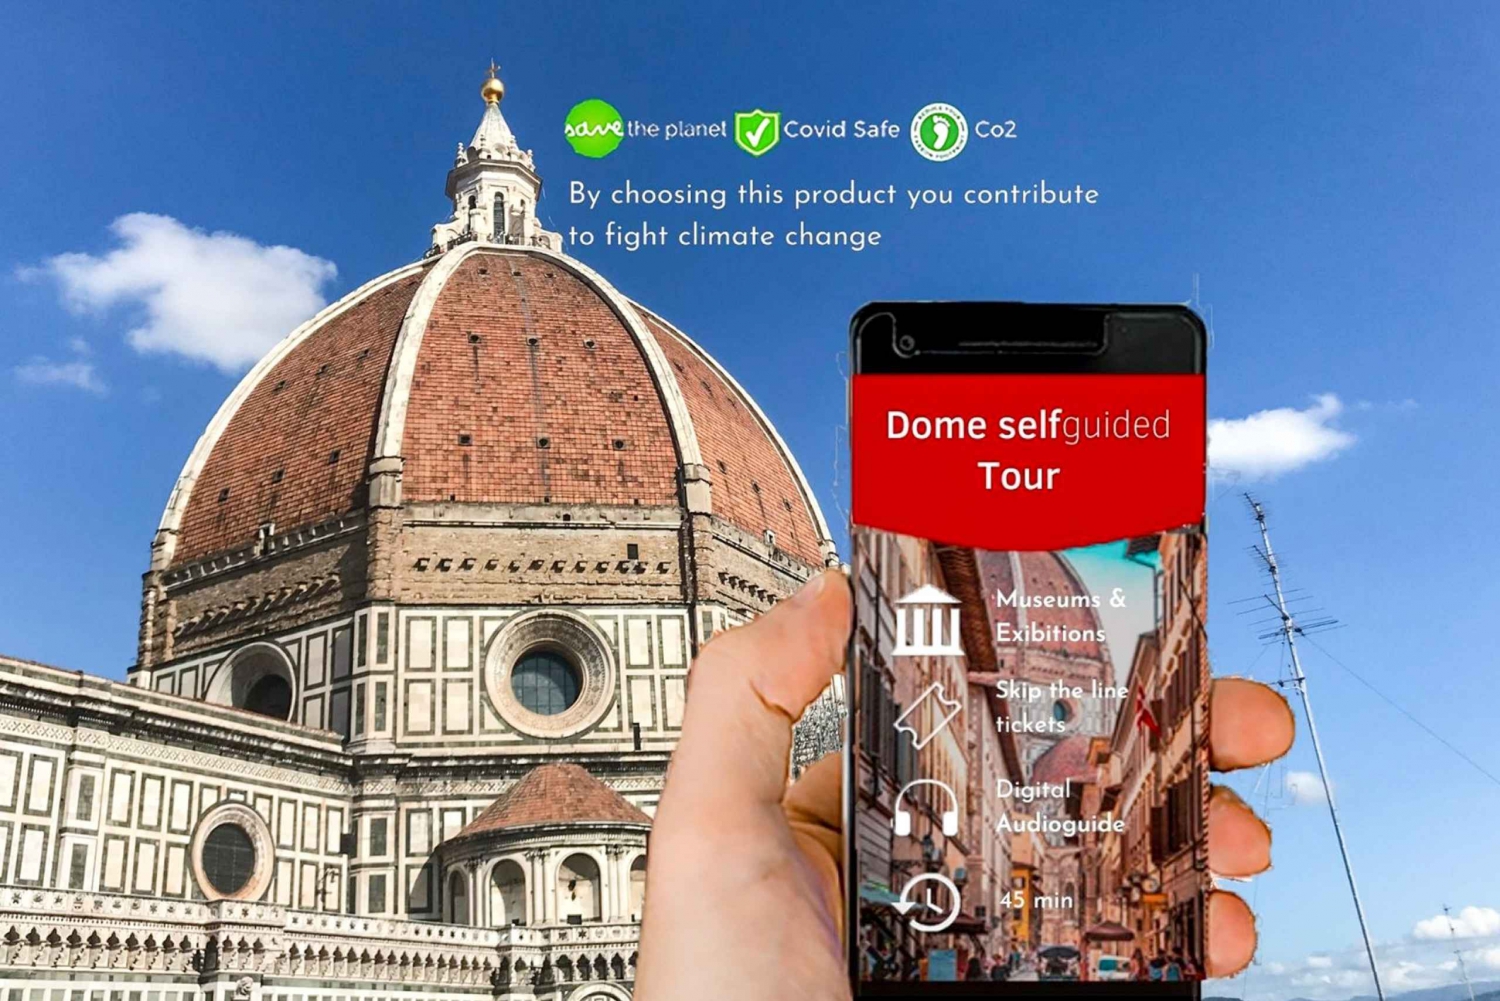 Florence : Billets pour la cathédrale avec le laissez-passer pour la coupole de Brunelleschi